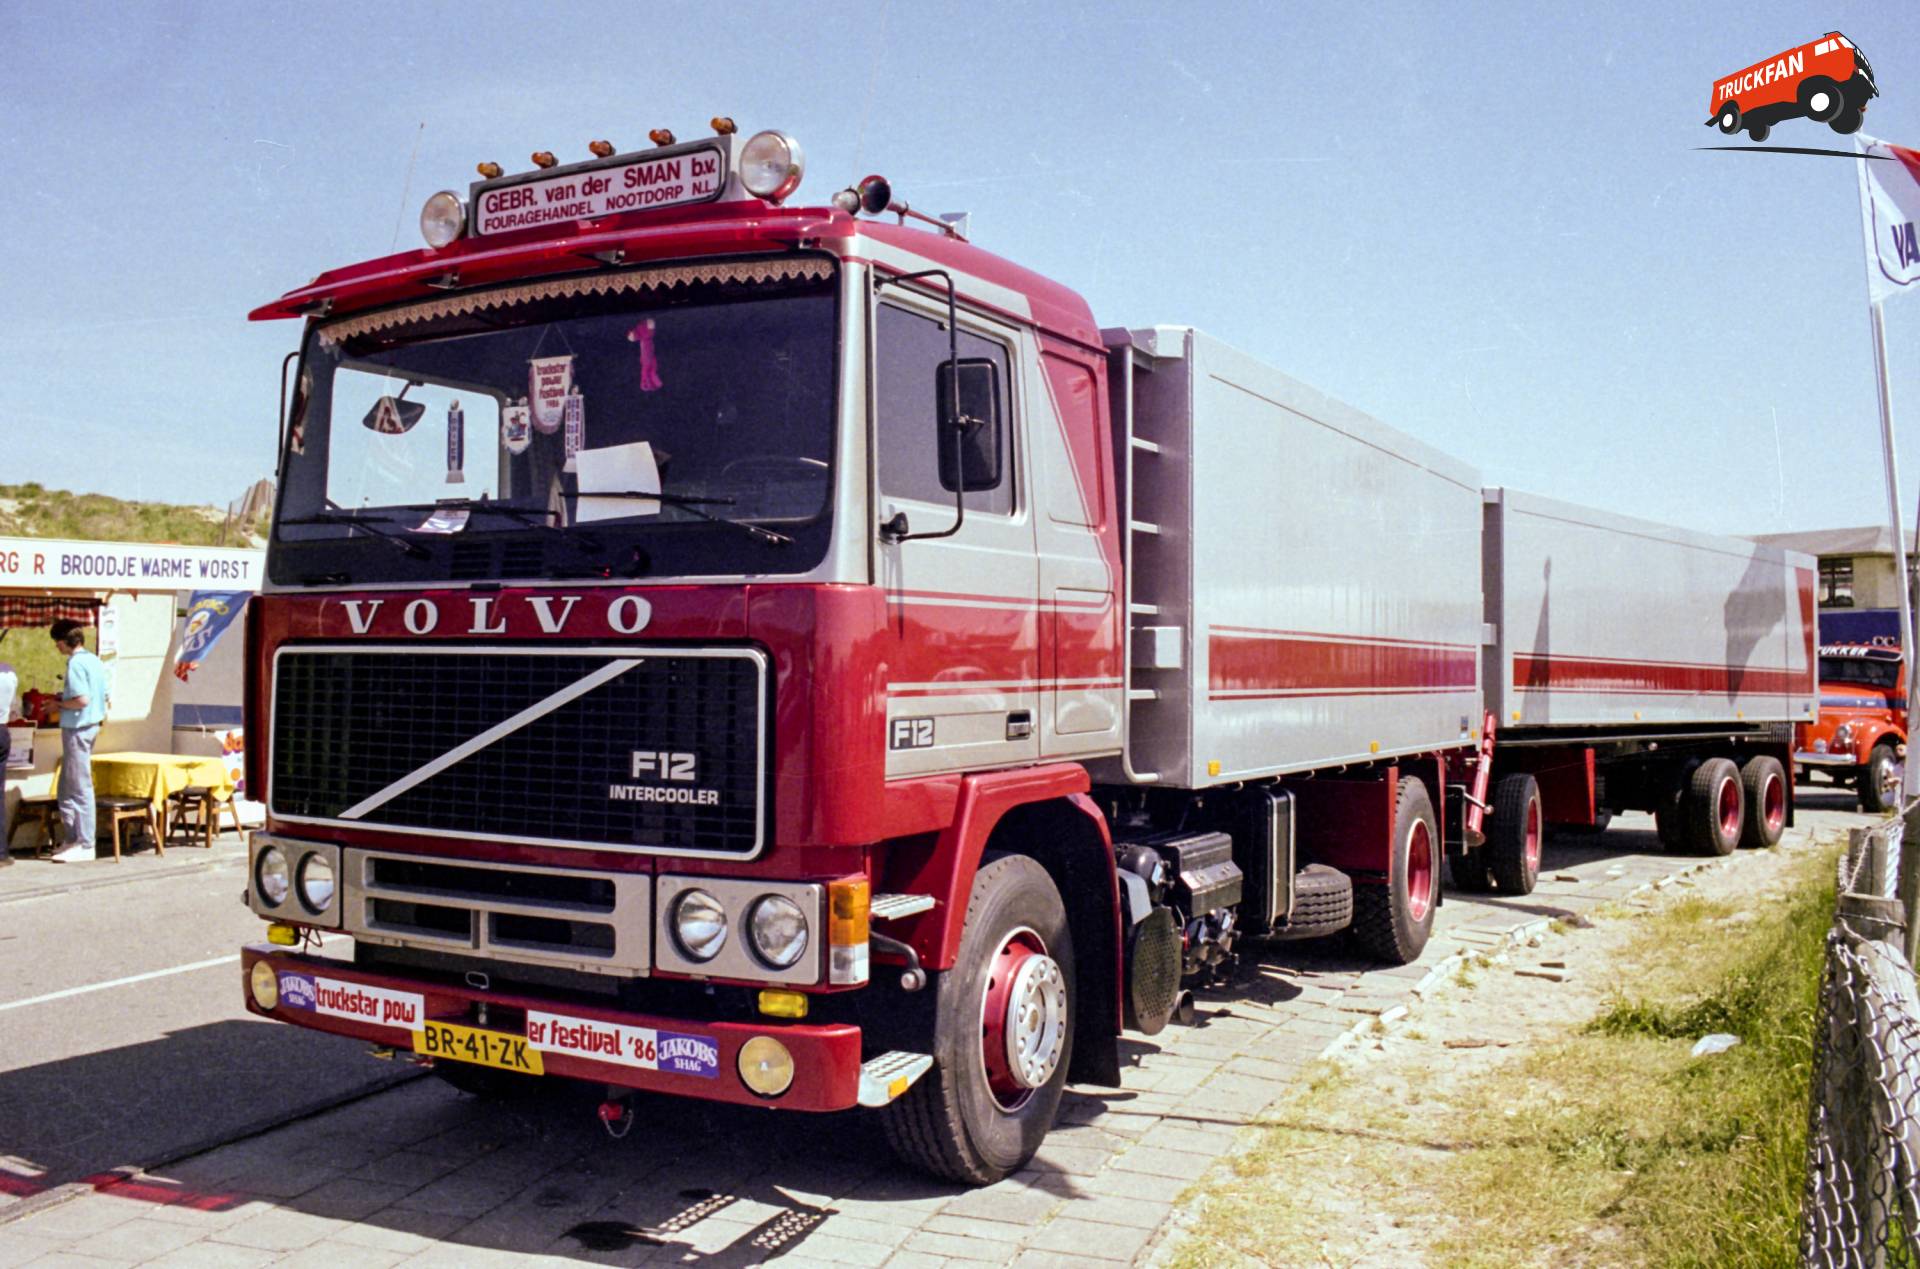 Foto Volvo F12 #1018463 - TruckFan